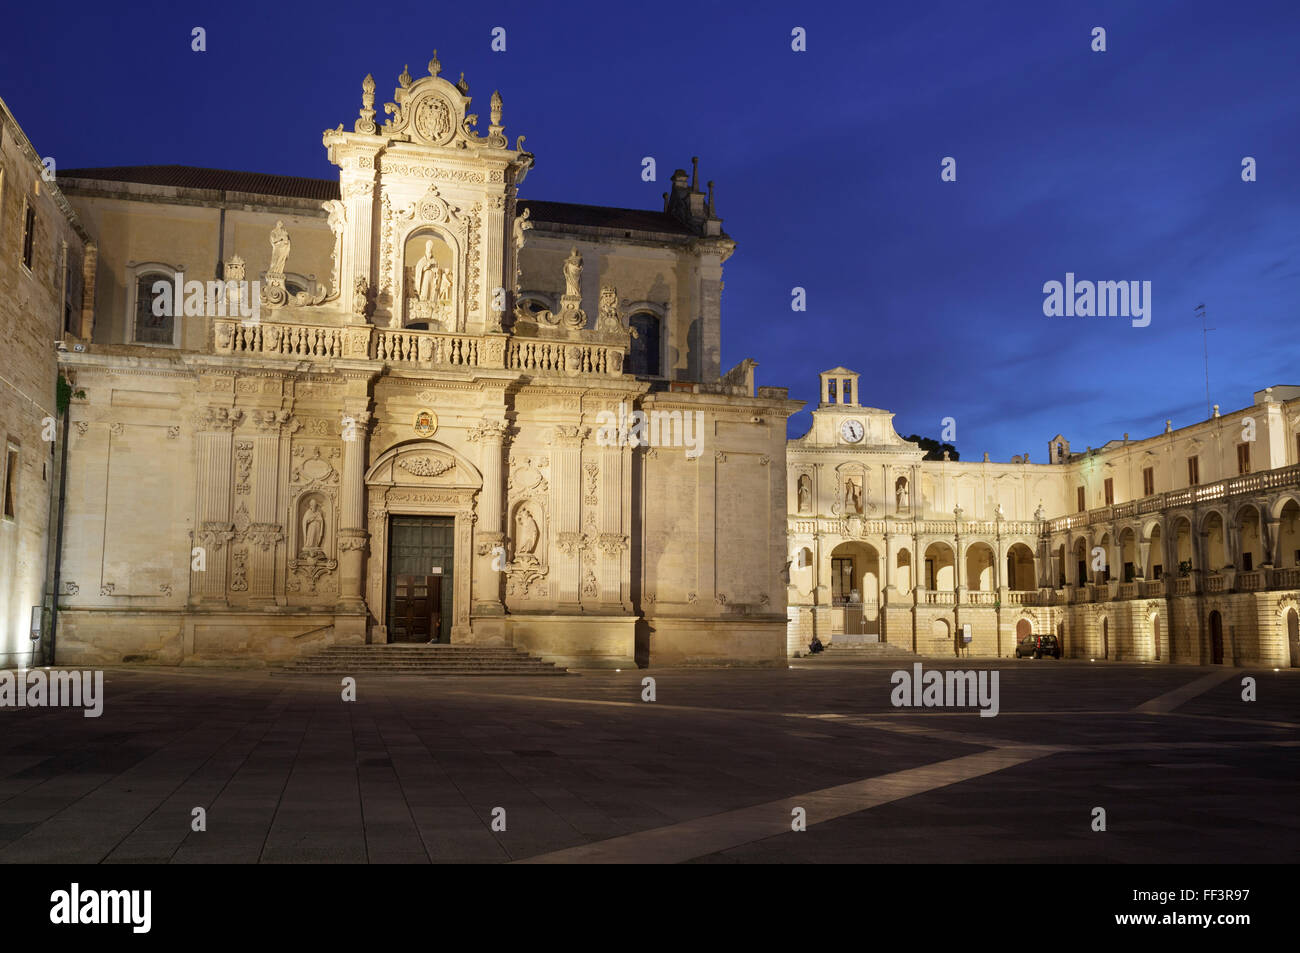 Piazza del Duomo, Lecce, Puglia, Italy Stock Photo